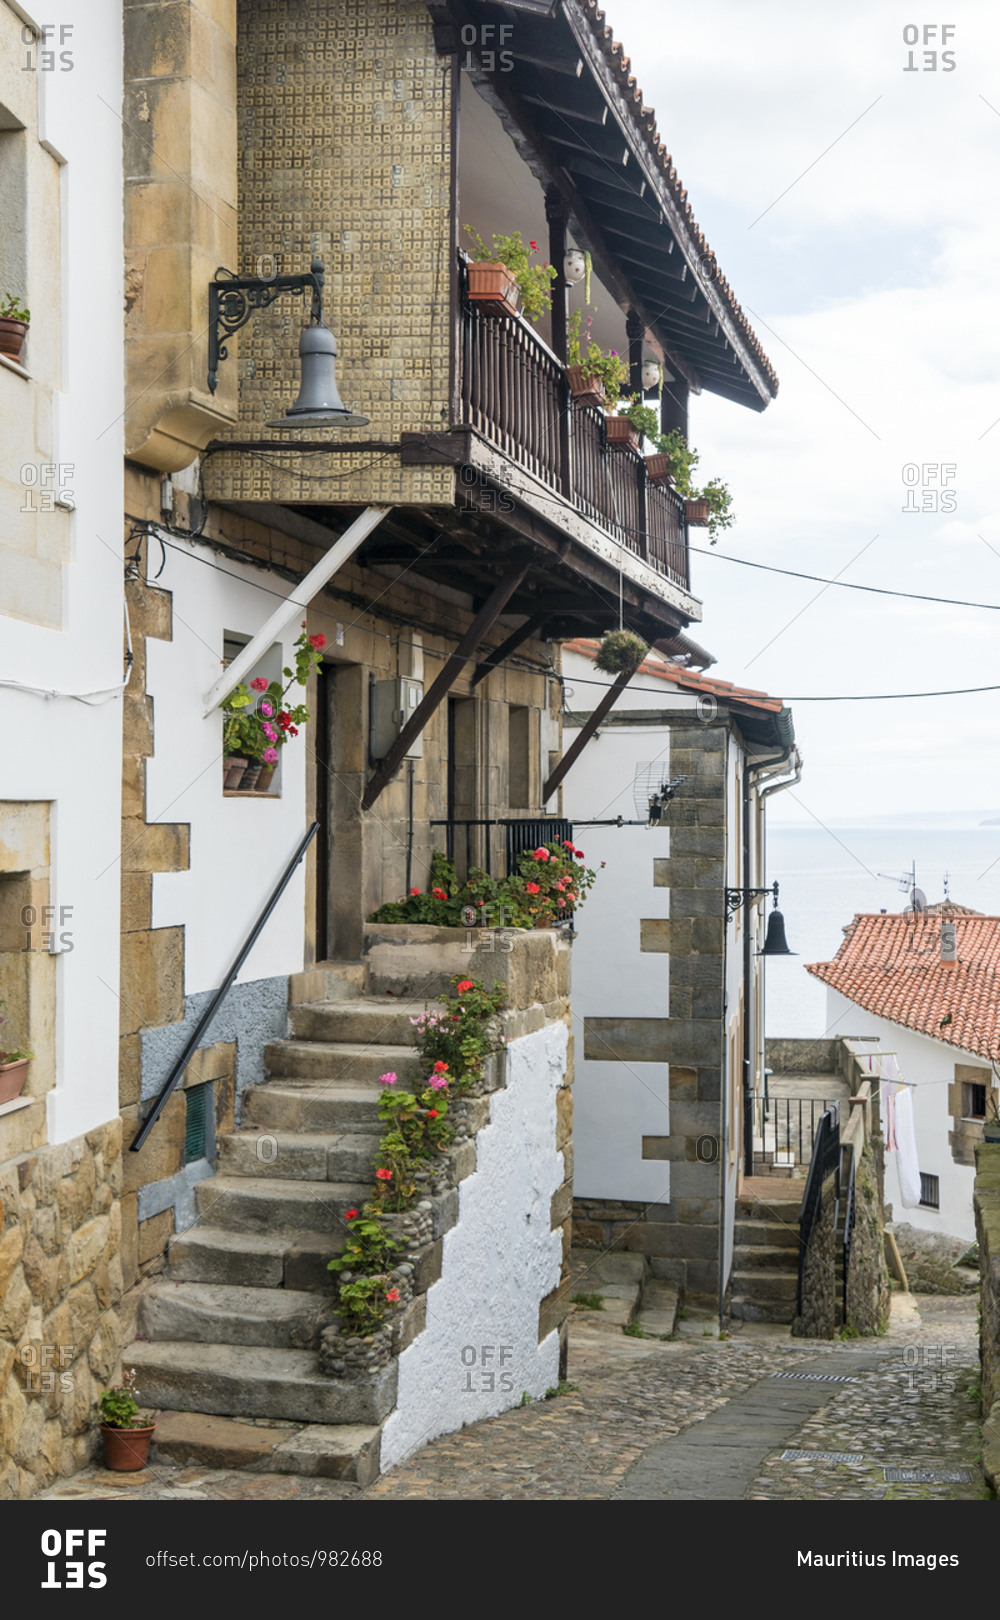 Spain, north coast, Asturias, Lastres, picturesque fishing village